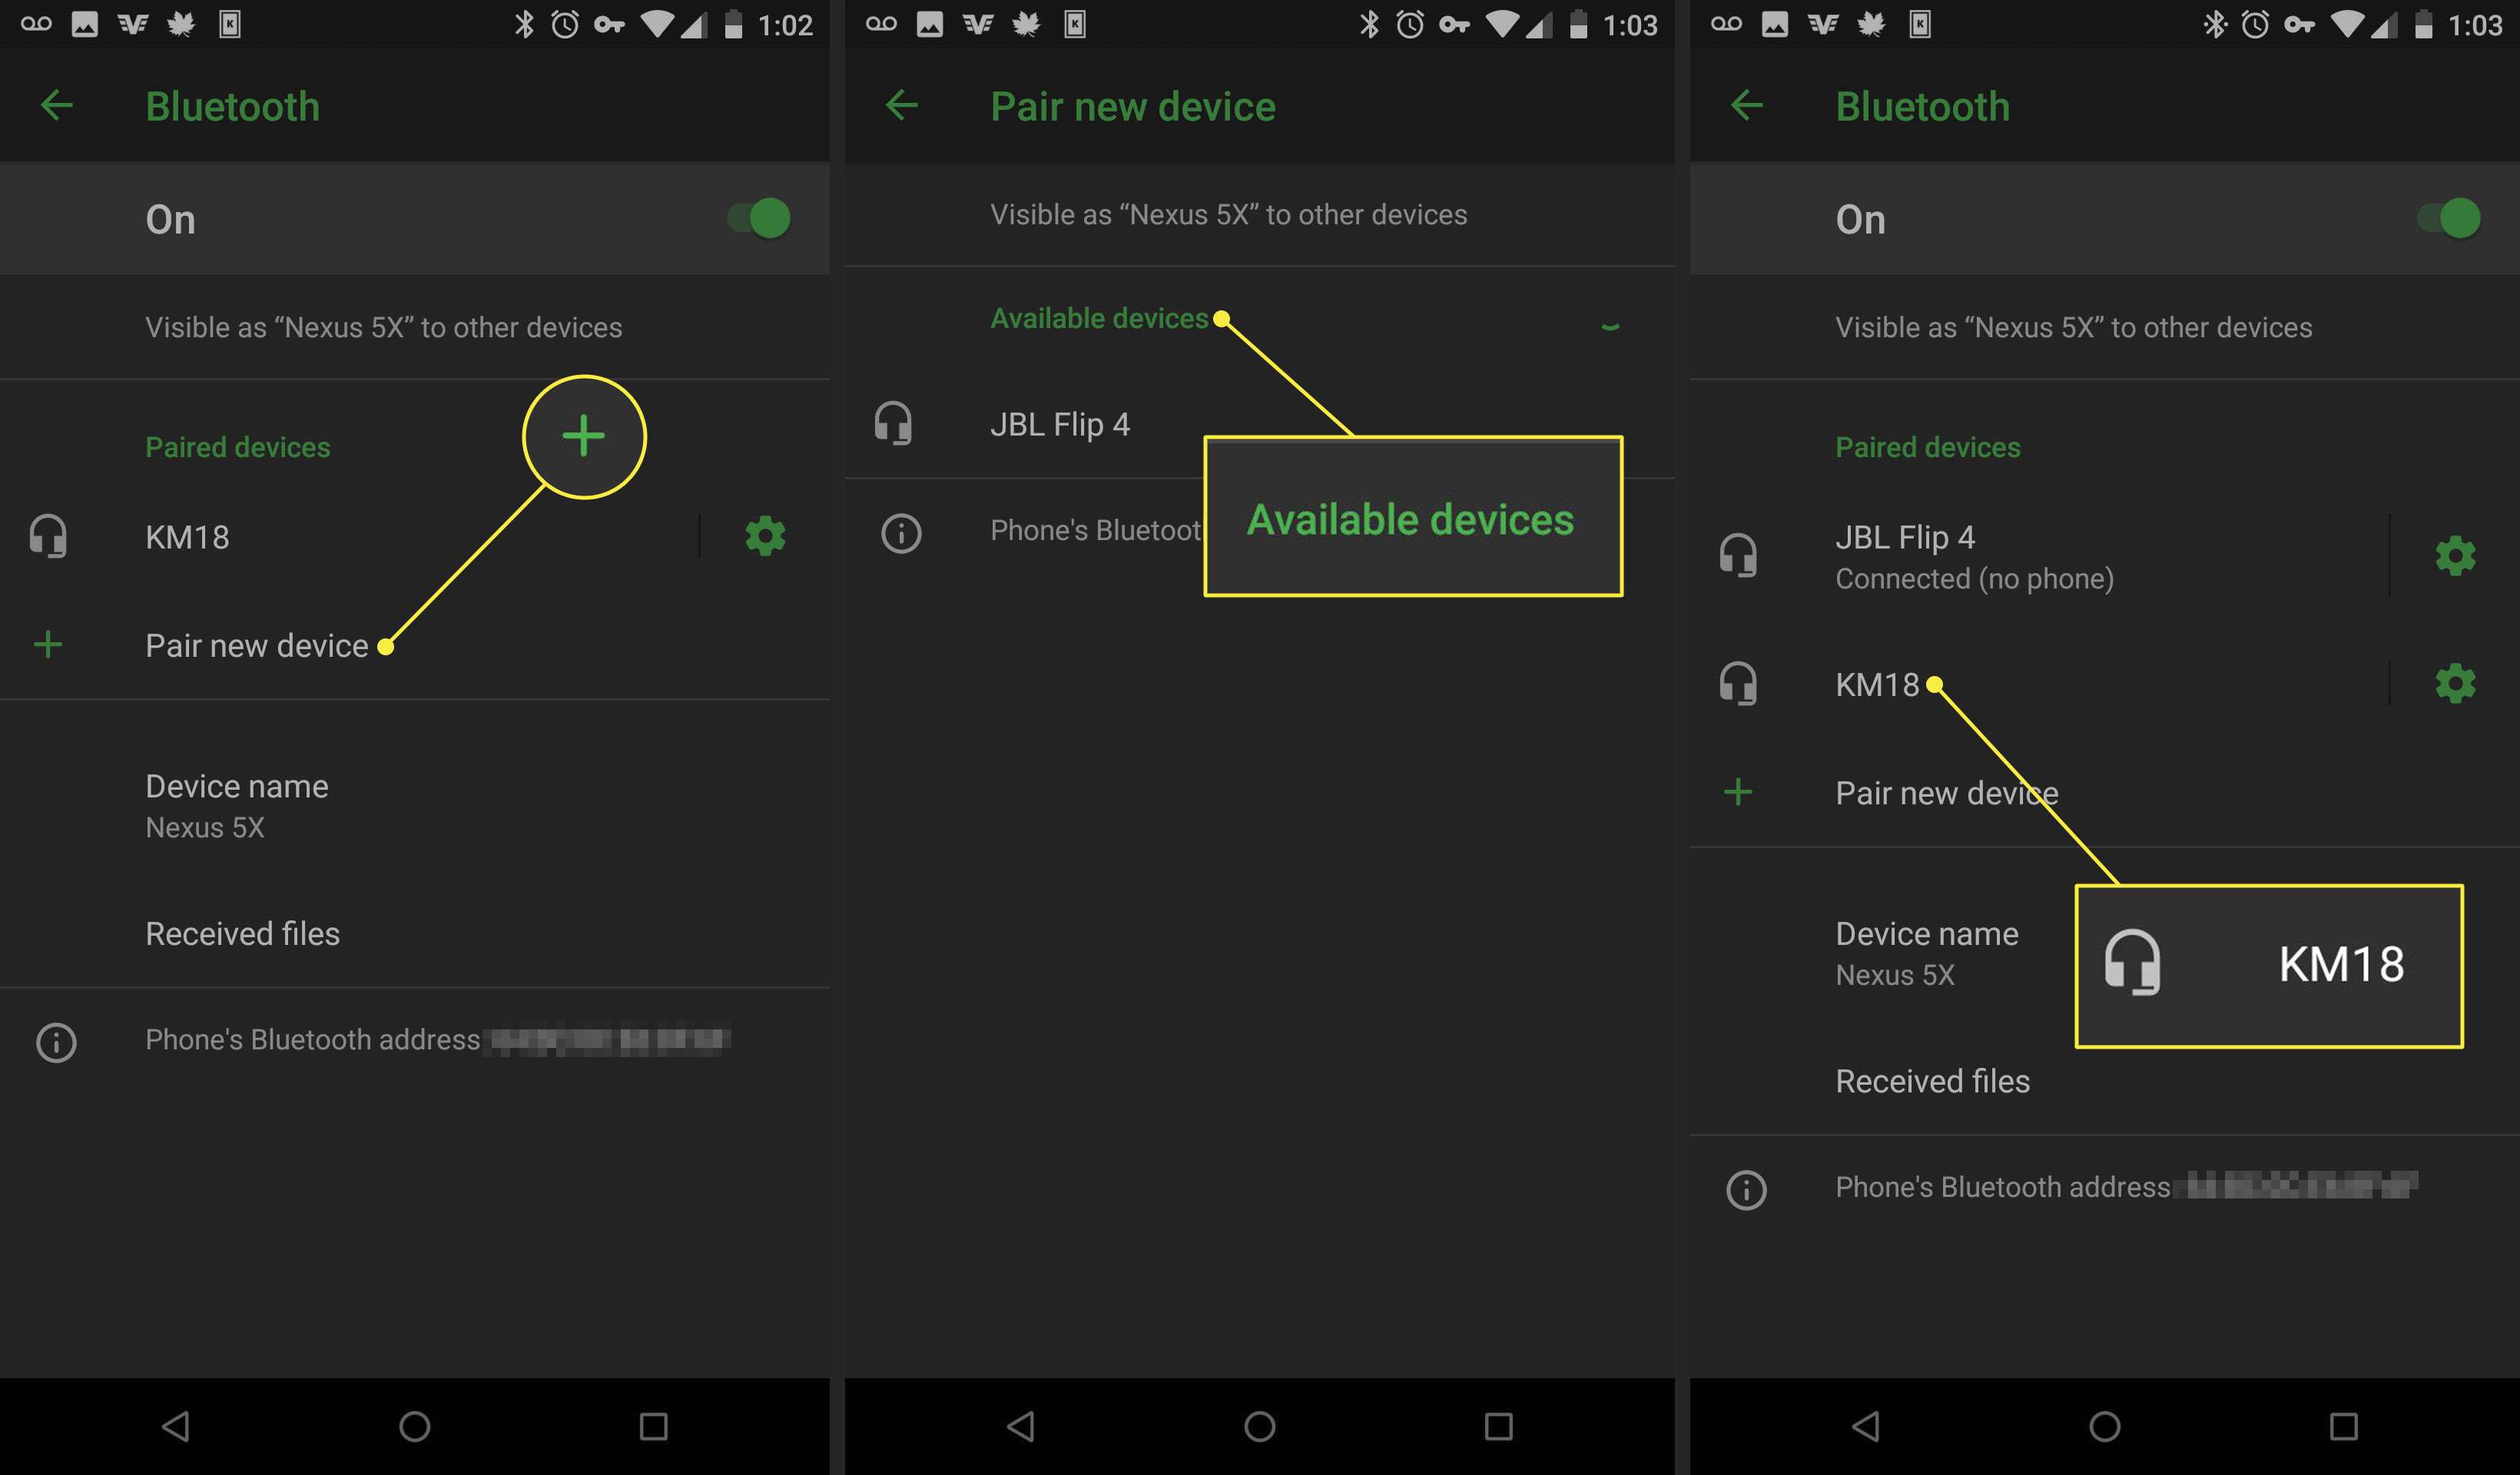 Schermafbeeldingen van een Android-apparaat die laten zien hoe je een apparaat via Bluetooth koppelt